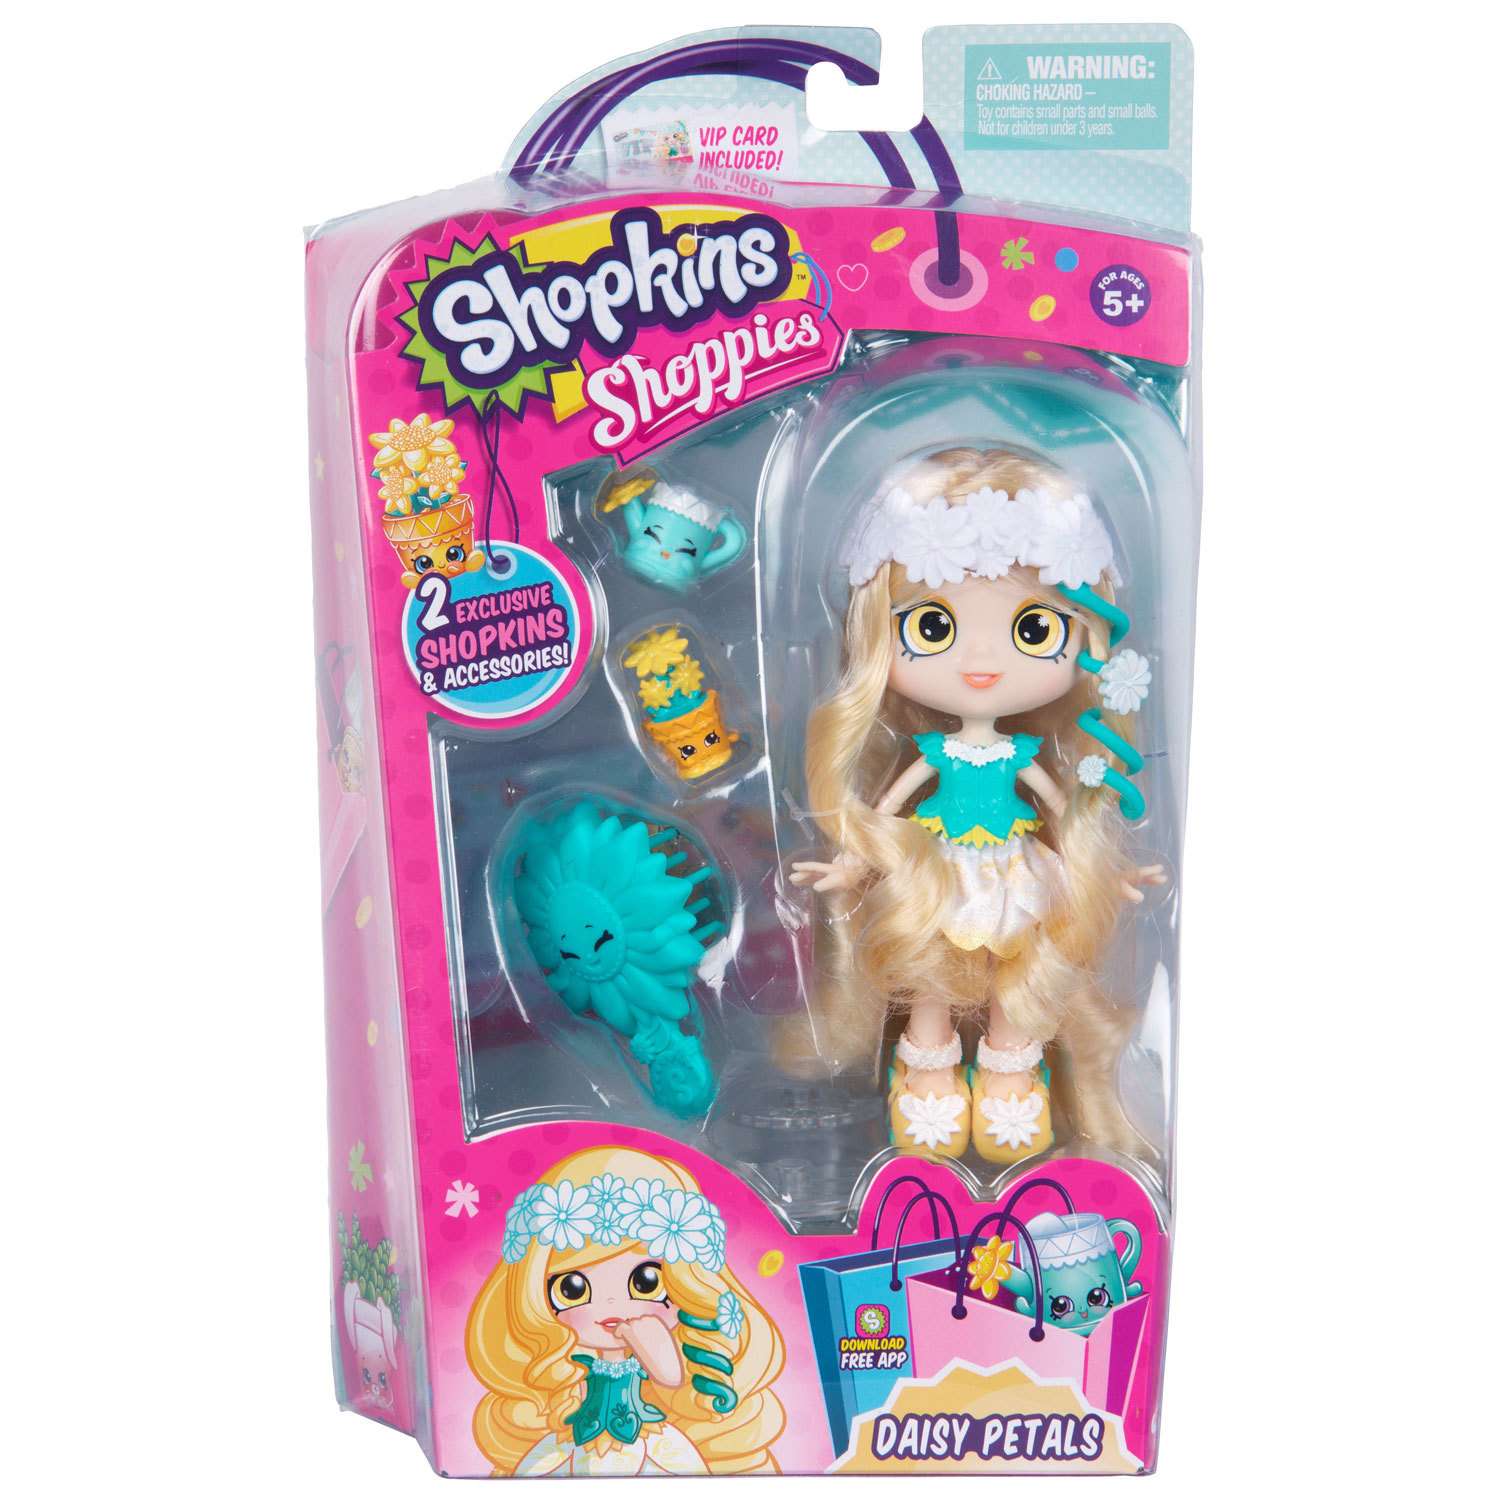 Кукла Shopkins Shoppies Daisy Petals 56403 56563 (56403 56404 56405) - фото 2